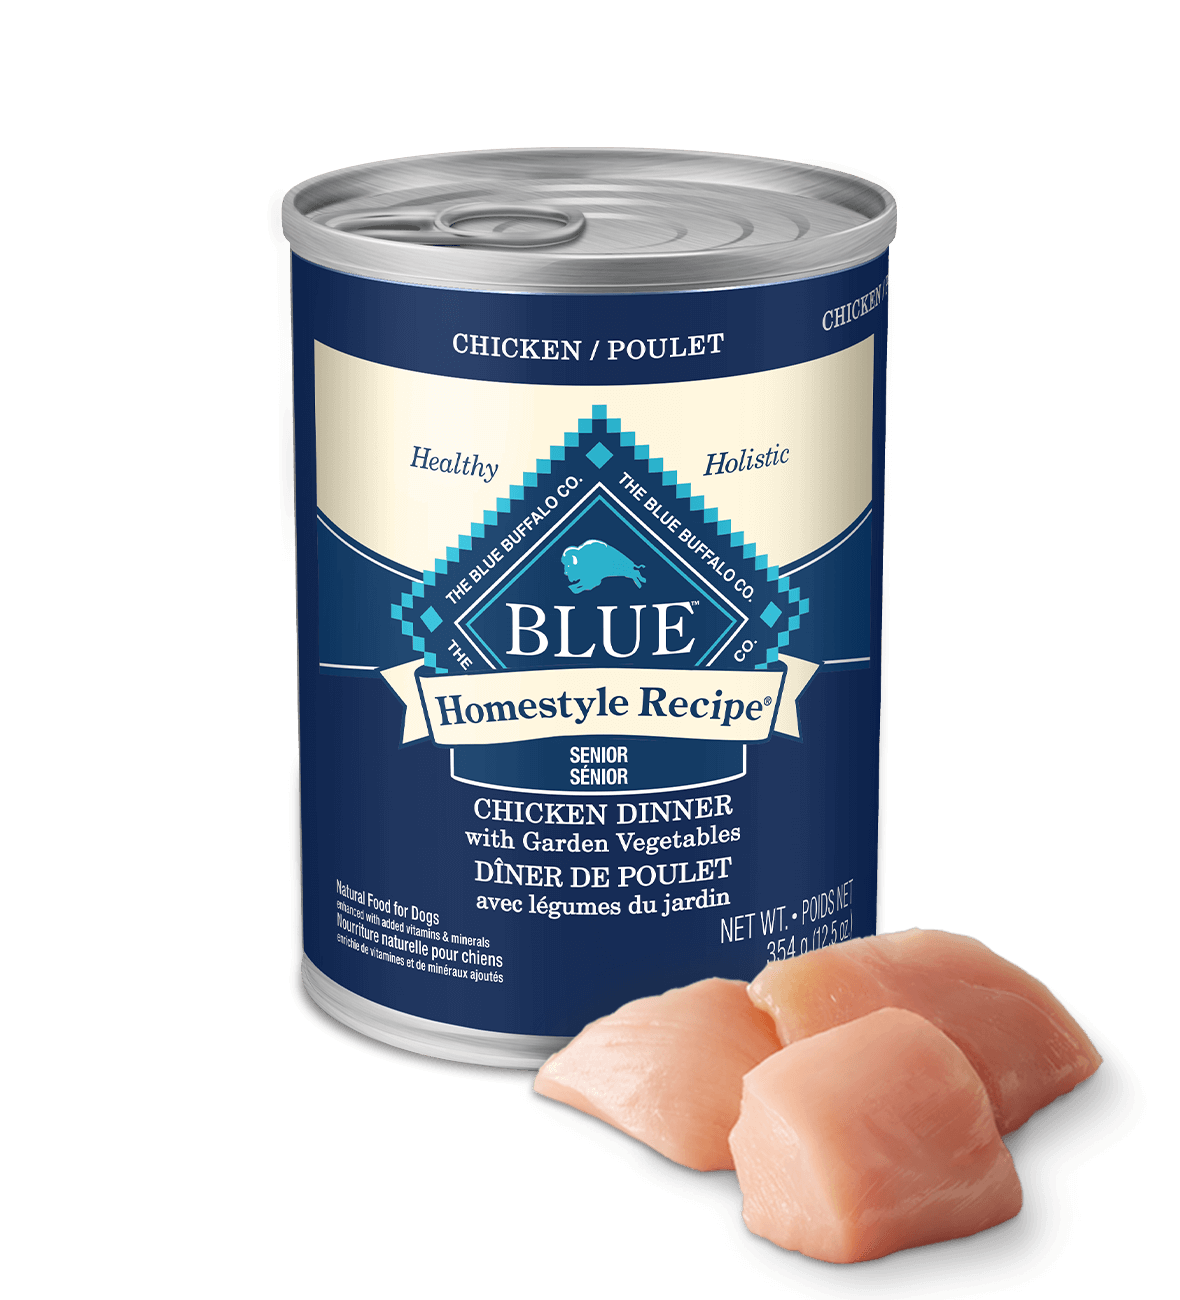 blue homestyle recipe senior chicken dinner with garden vegetables dog wet food